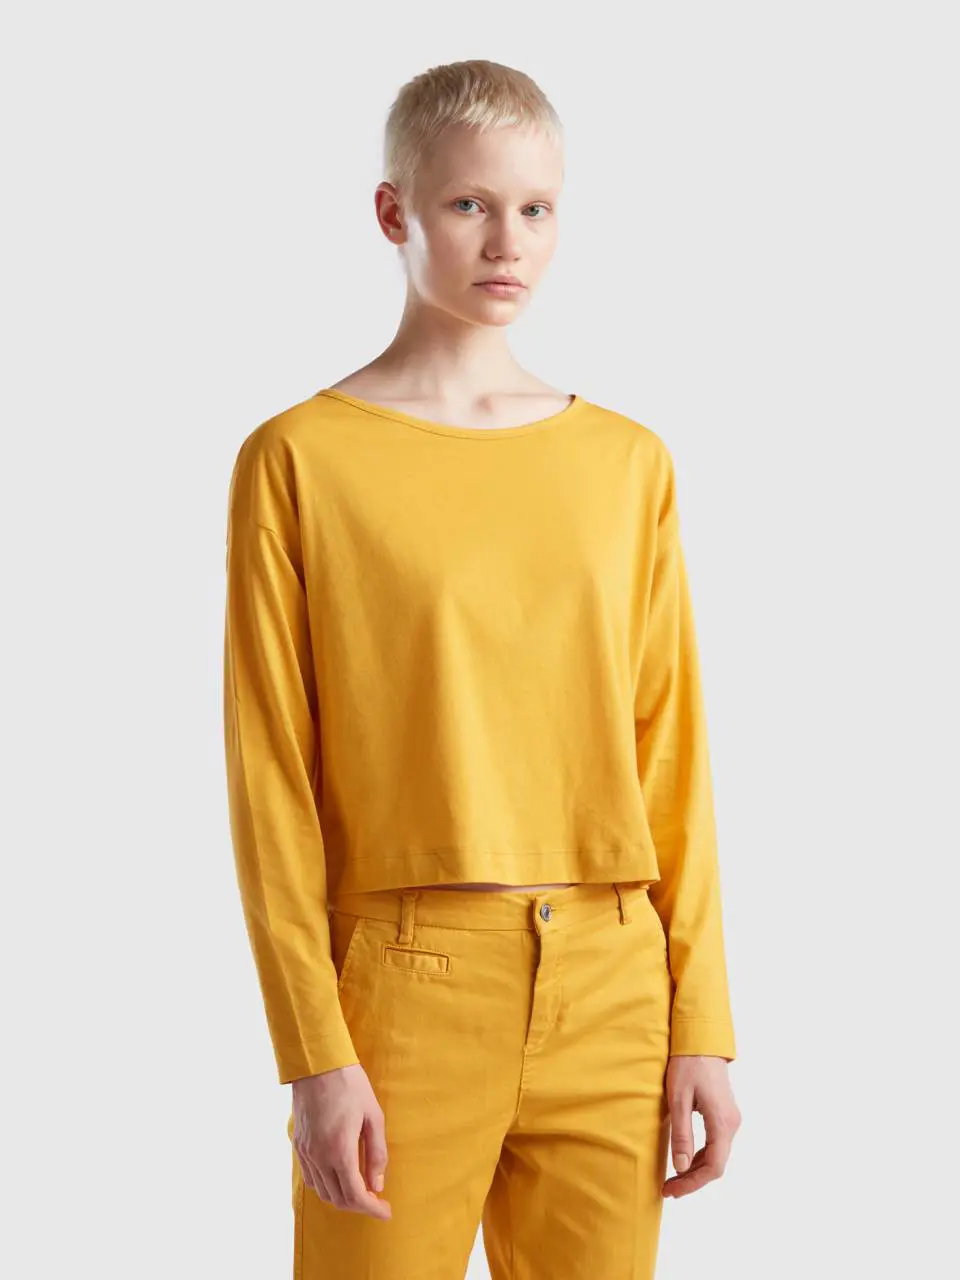 Benetton yellow ochre long fiber cotton t-shirt. 1